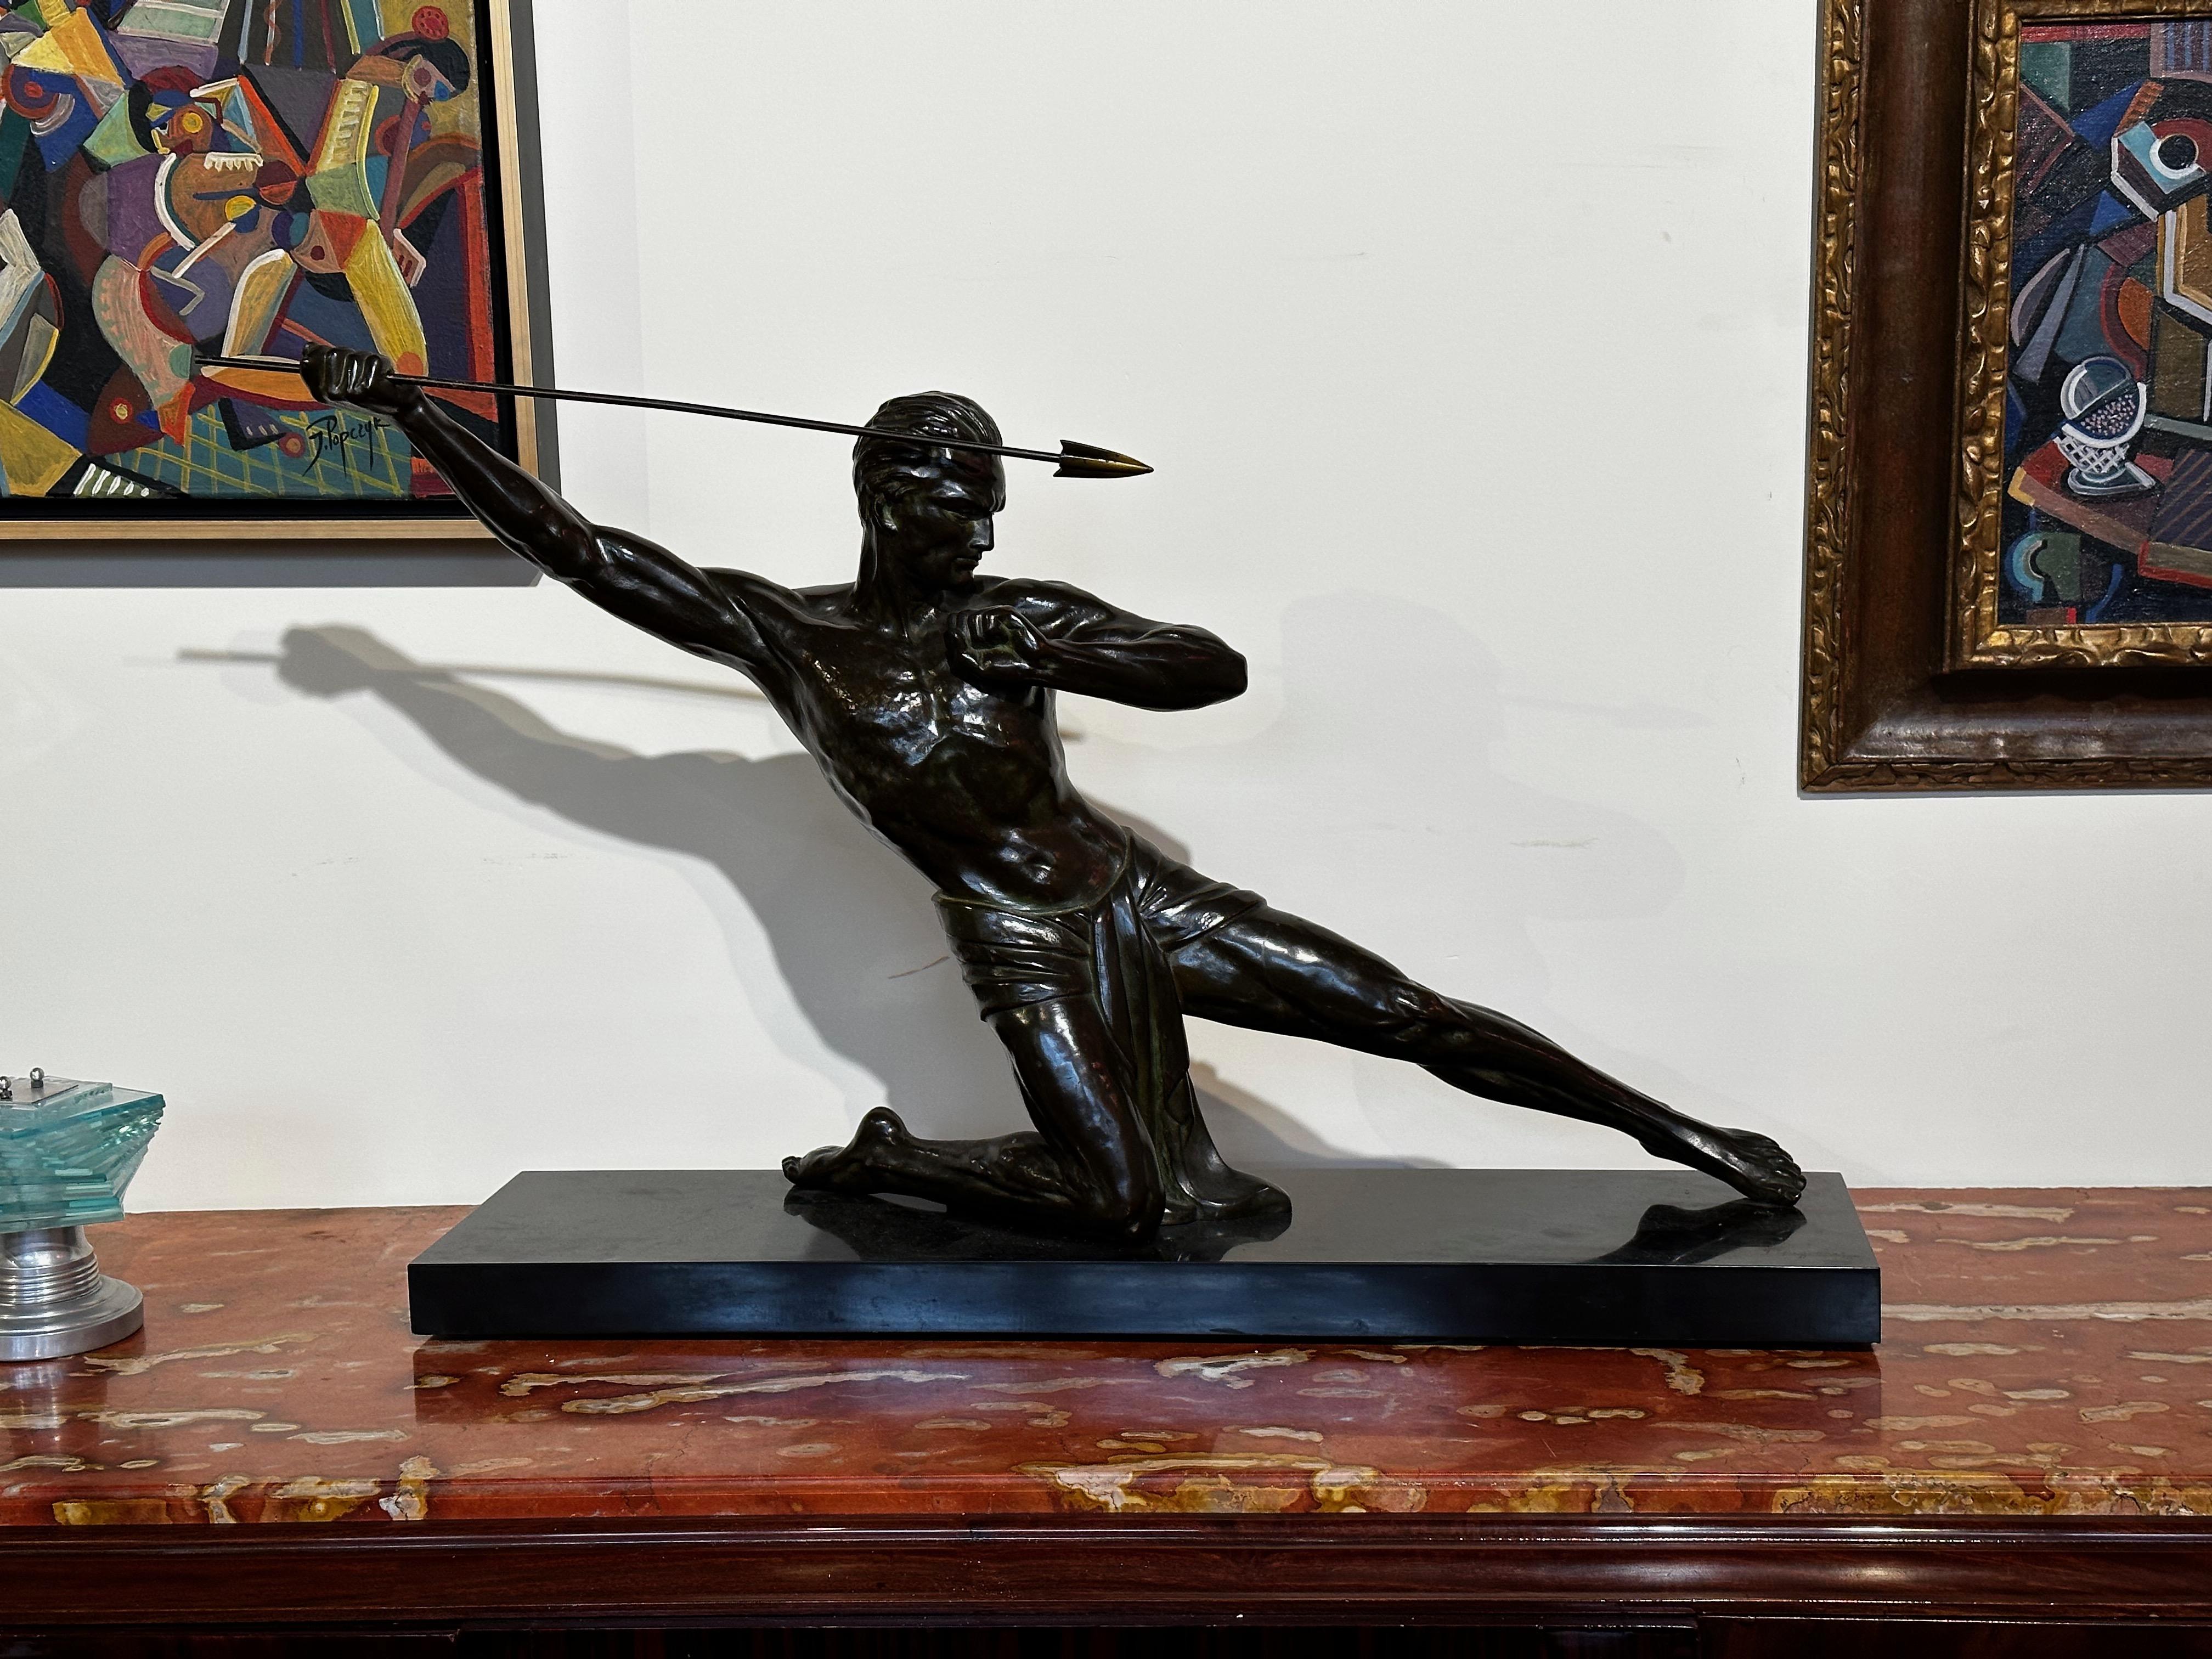 Grand bronze original de P. Hugonnet signé sur le marbre, il représente le lanceur de javelot classique. Il s'agit d'une figure très bien détaillée et très intense. Regardez son visage, ses mains, sa musculature. Nombre de ces poses athlétiques